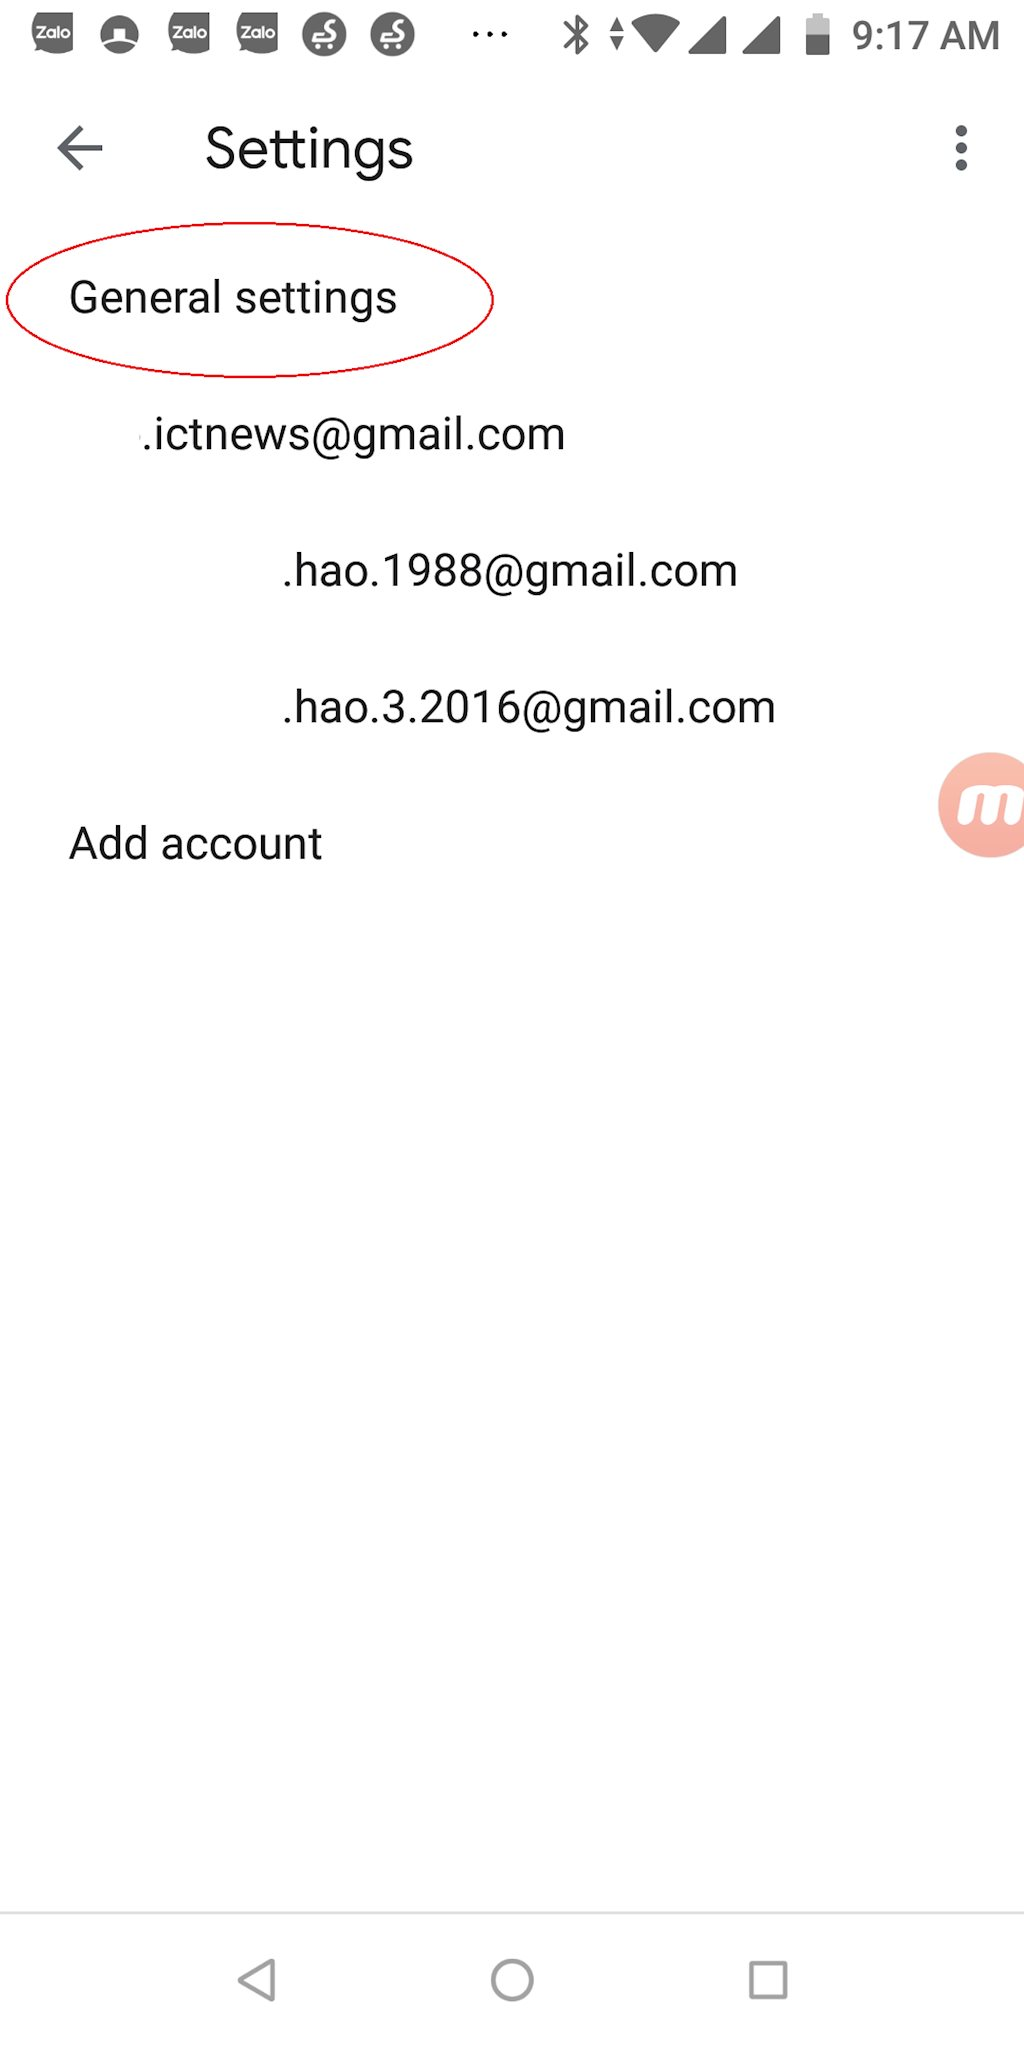 e3-huong-dan-cai-dat-giao-dien-gmail-nen-toi-cach-thay-doi-giao-dien-gmail-dark-mode(1).png